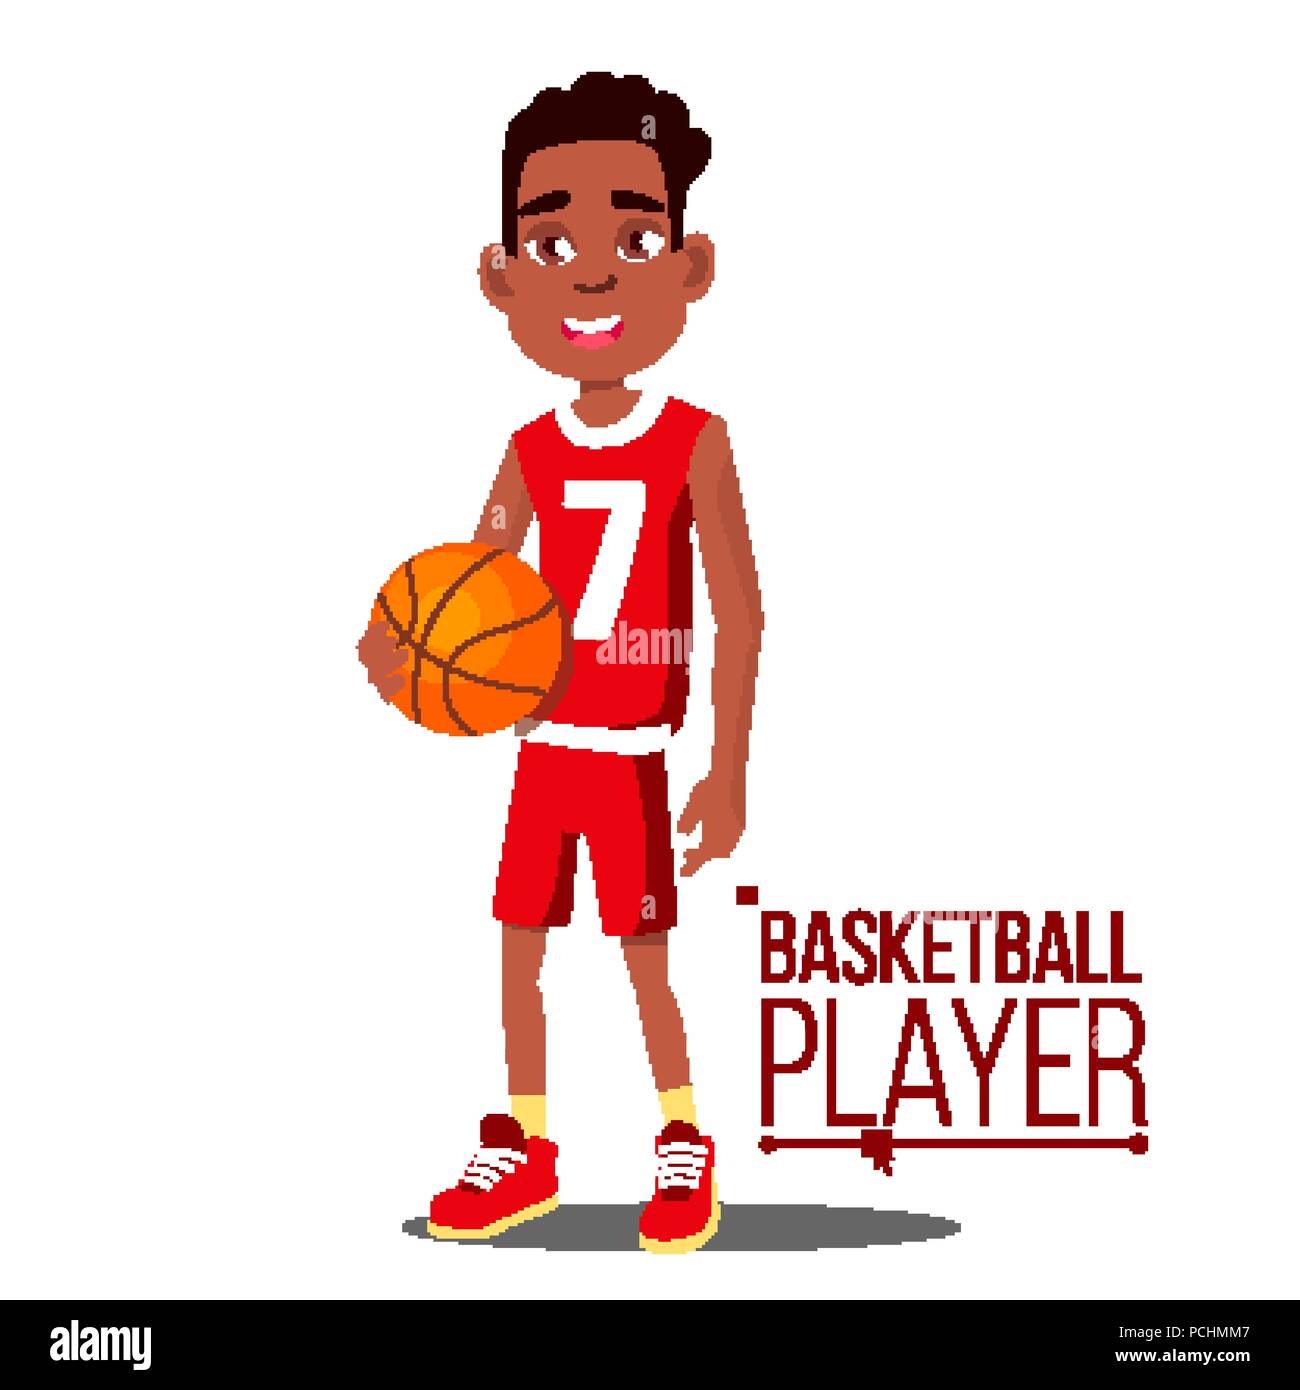 https://c8.alamy.com/compes/pchmm7/el-jugador-de-baloncesto-nino-vector-los-afro-americanos-negro-atleta-en-uniforme-con-balon-estilo-de-vida-saludable-plano-aislado-cartoon-ilustracion-pchmm7.jpg